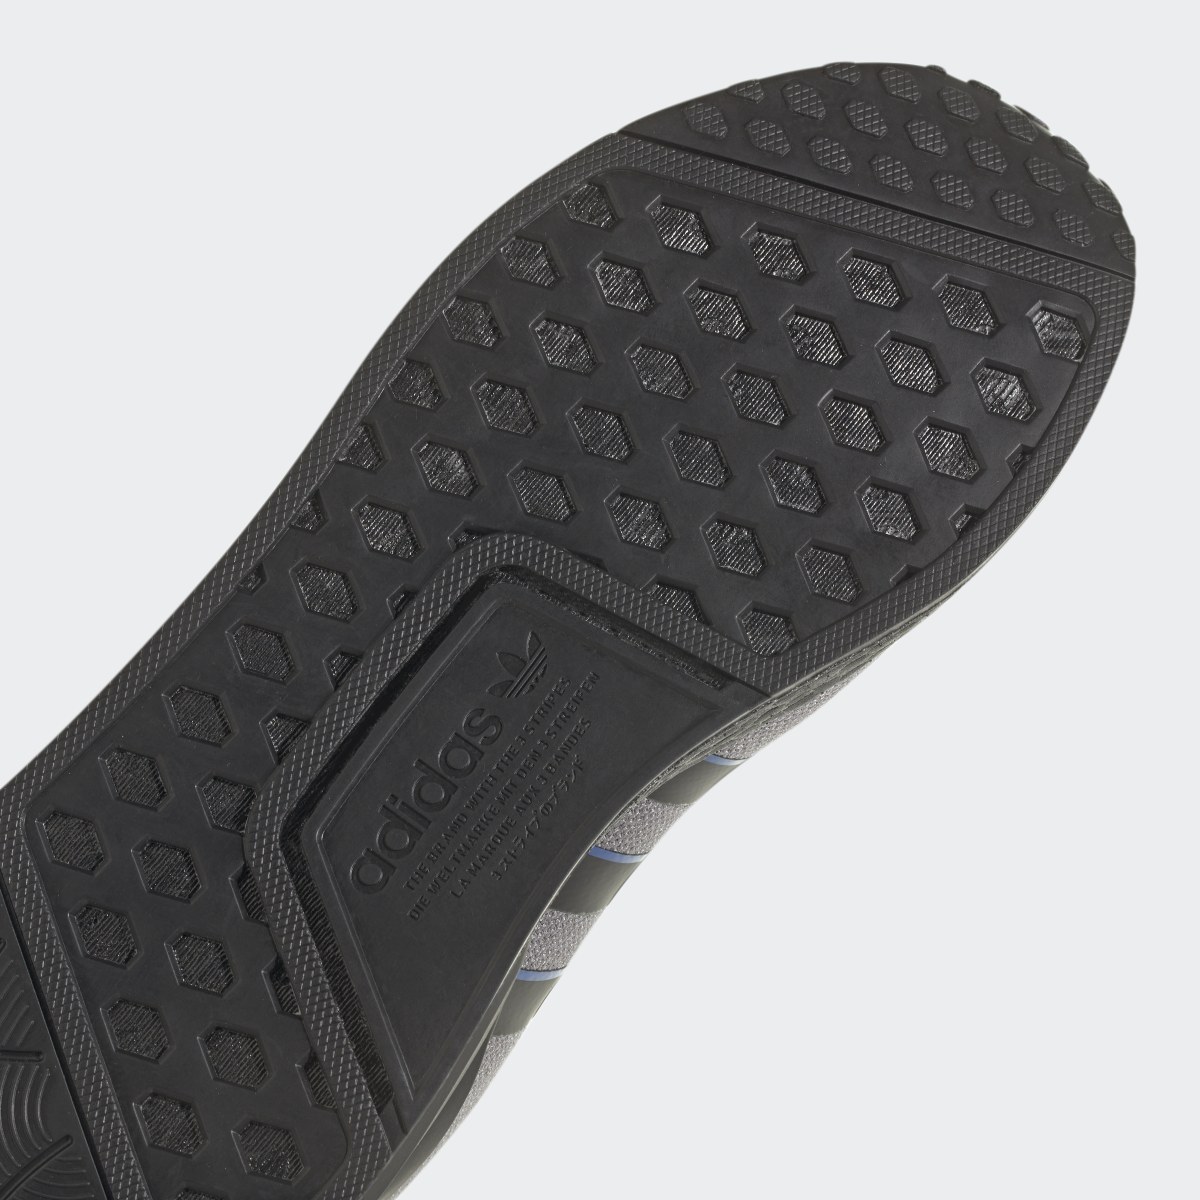 Adidas Chaussure NMD_R1 V2. 9